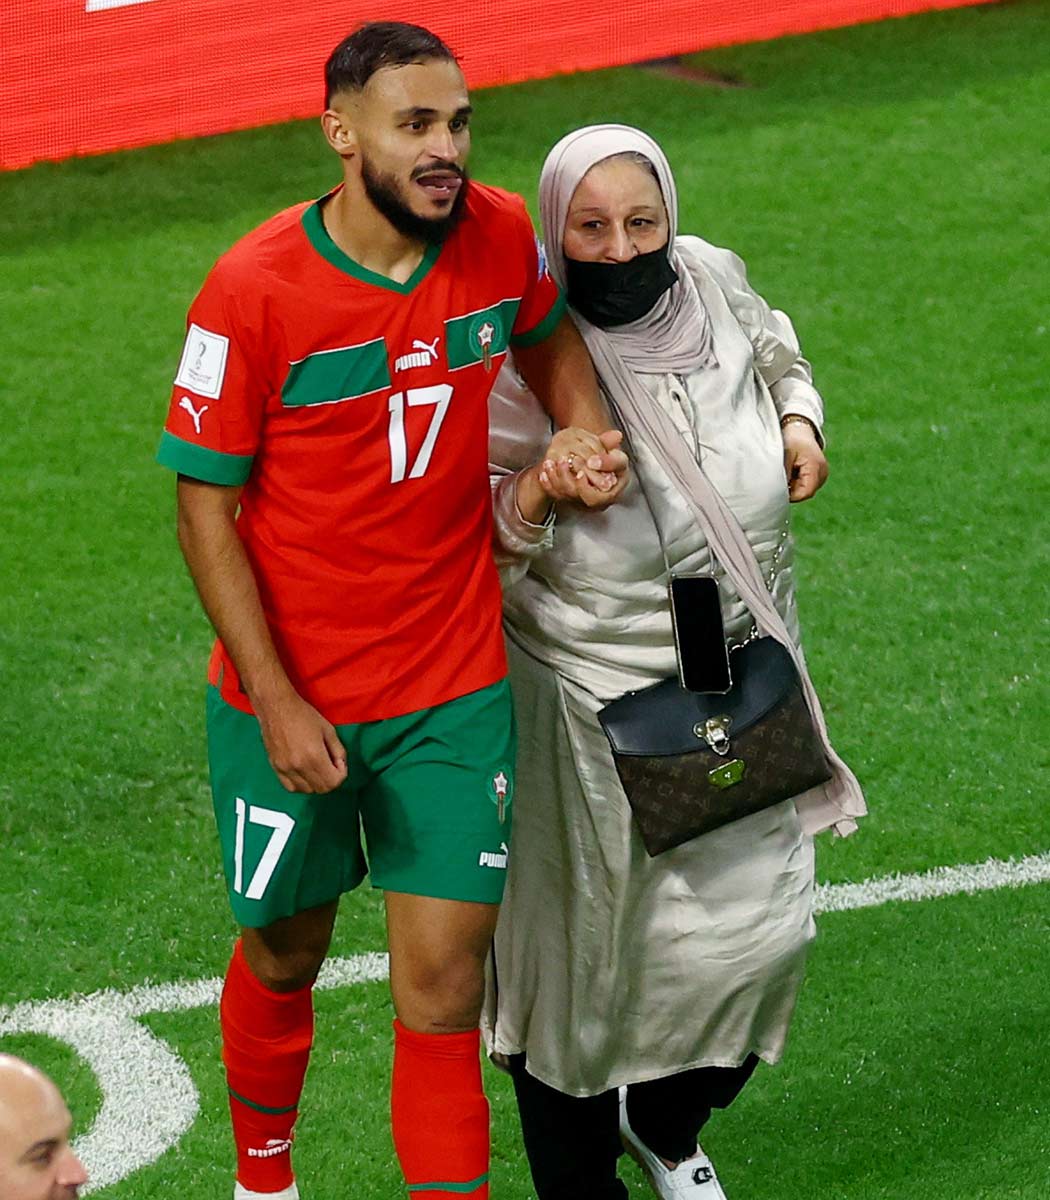 Marruecos hizo historia al imponerse 1-0 a Portugal y es el primer equipo africano en semifinales de un Mundial